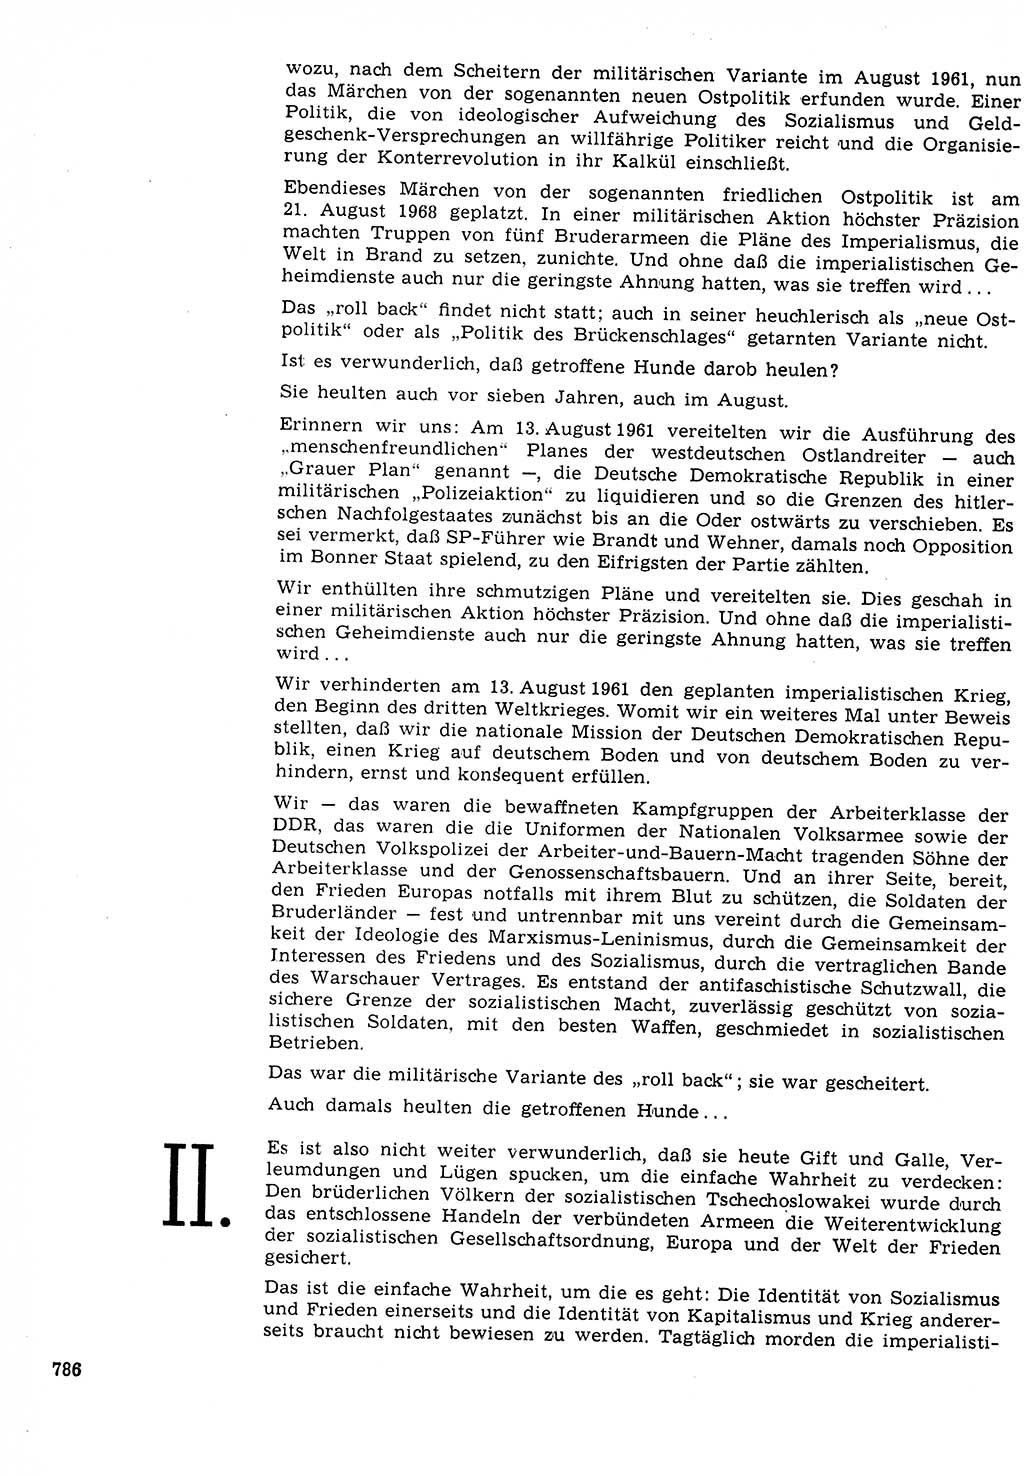 Neuer Weg (NW), Organ des Zentralkomitees (ZK) der SED (Sozialistische Einheitspartei Deutschlands) für Fragen des Parteilebens, 23. Jahrgang [Deutsche Demokratische Republik (DDR)] 1968, Seite 770 (NW ZK SED DDR 1968, S. 770)